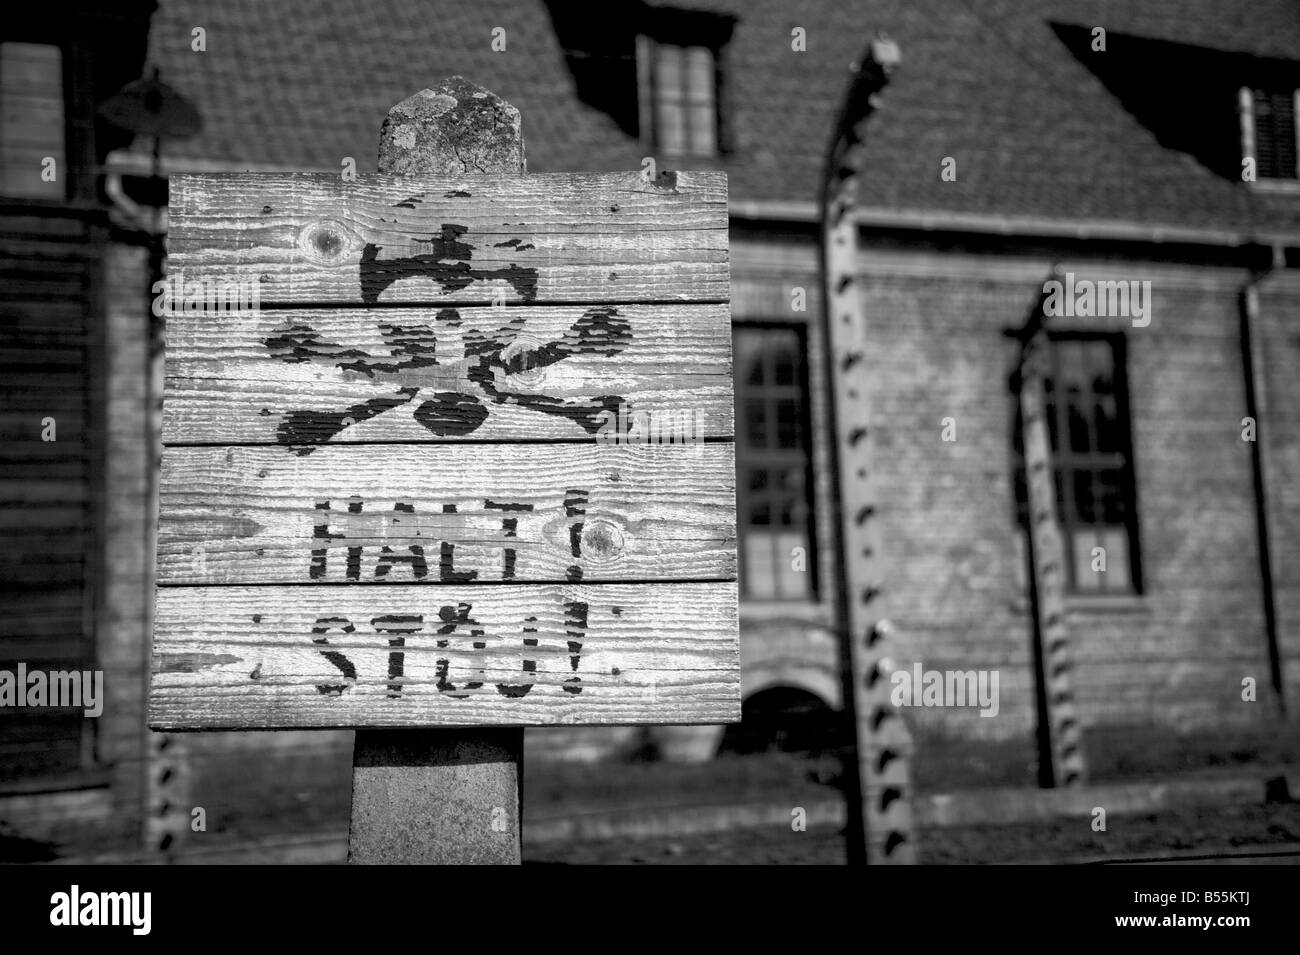 Avvertenza stop con cranio&ossa simbolo nella parte anteriore del filo spinato recinzione elettrificata nell'ex campo di concentramento di Auschwitz ho Foto Stock